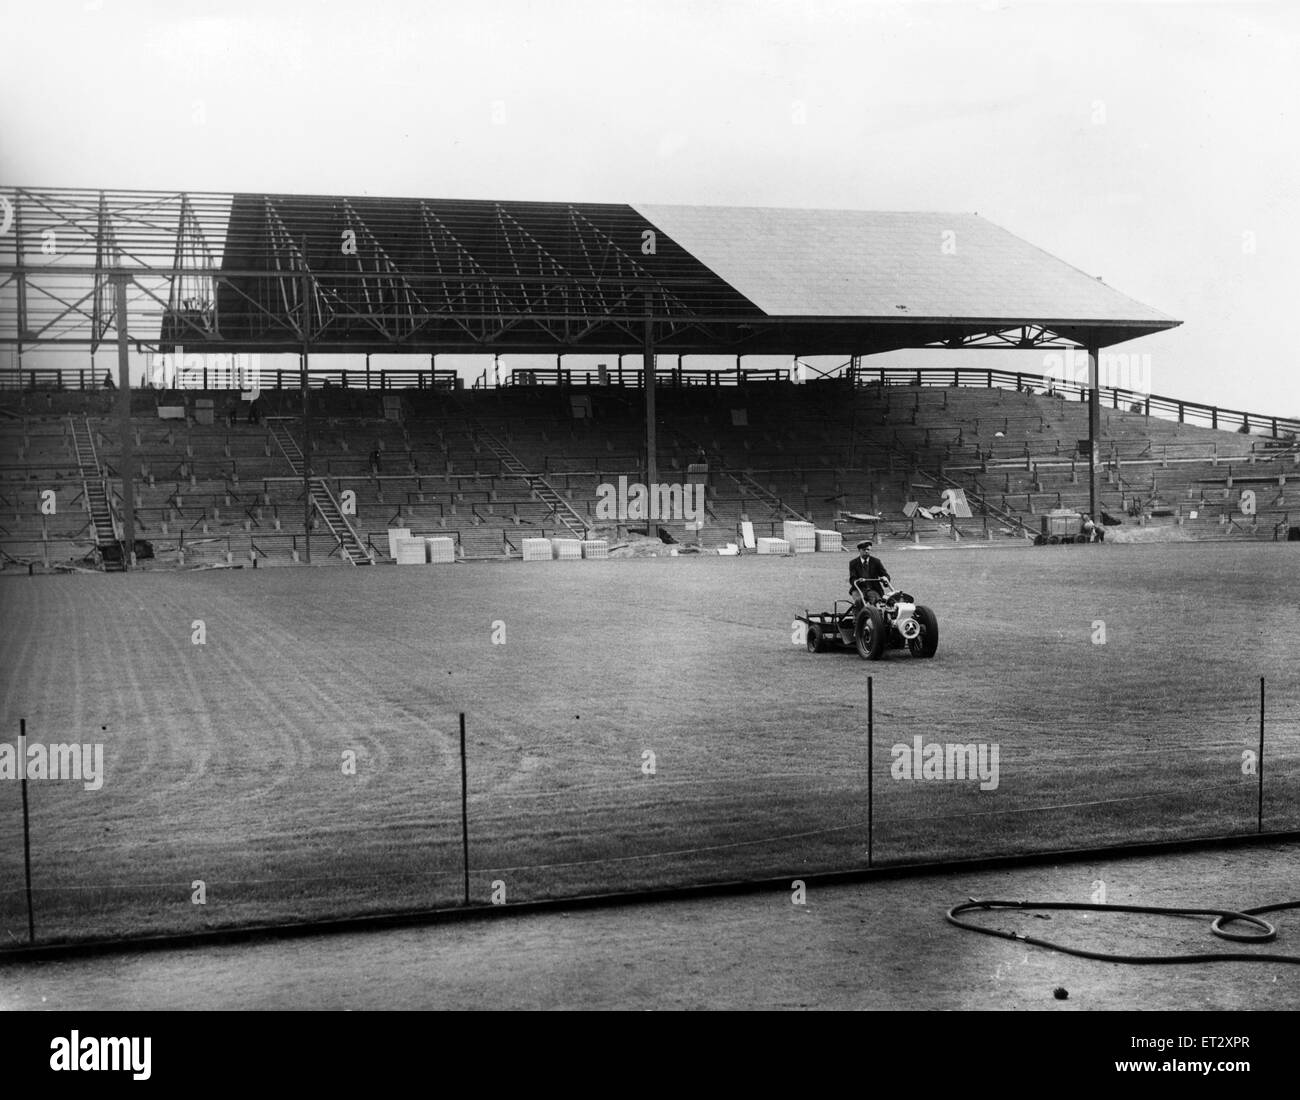 Leeds Road ist ein Fußballstadion in Huddersfield. Sie bedient von seinem Bau im Jahre 1908 bis Alfred McAlpine Stadium in der Nähe der 1994 eröffnete? 95 Saison. Es war die Heimat von Huddersfield Town F.C. abgebildet ist der Bau der Ost-ter Stockfoto